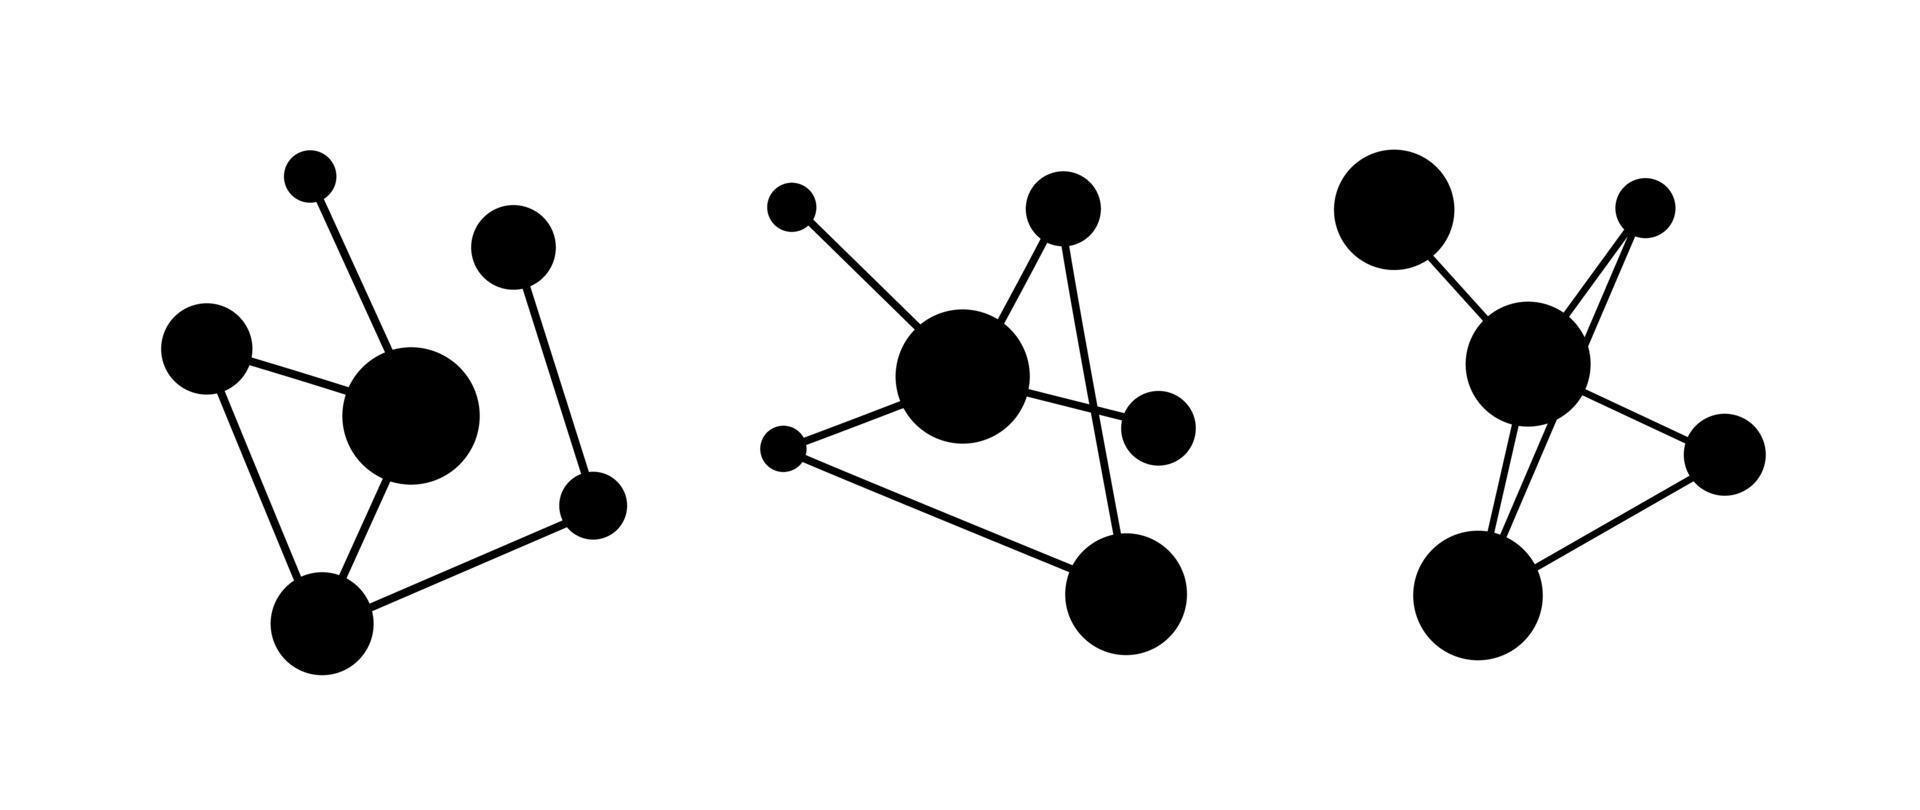 conexión de silueta de molécula o datos de gráfico de red en blanco y negro para resumen de ilustración de vector de negocio o química